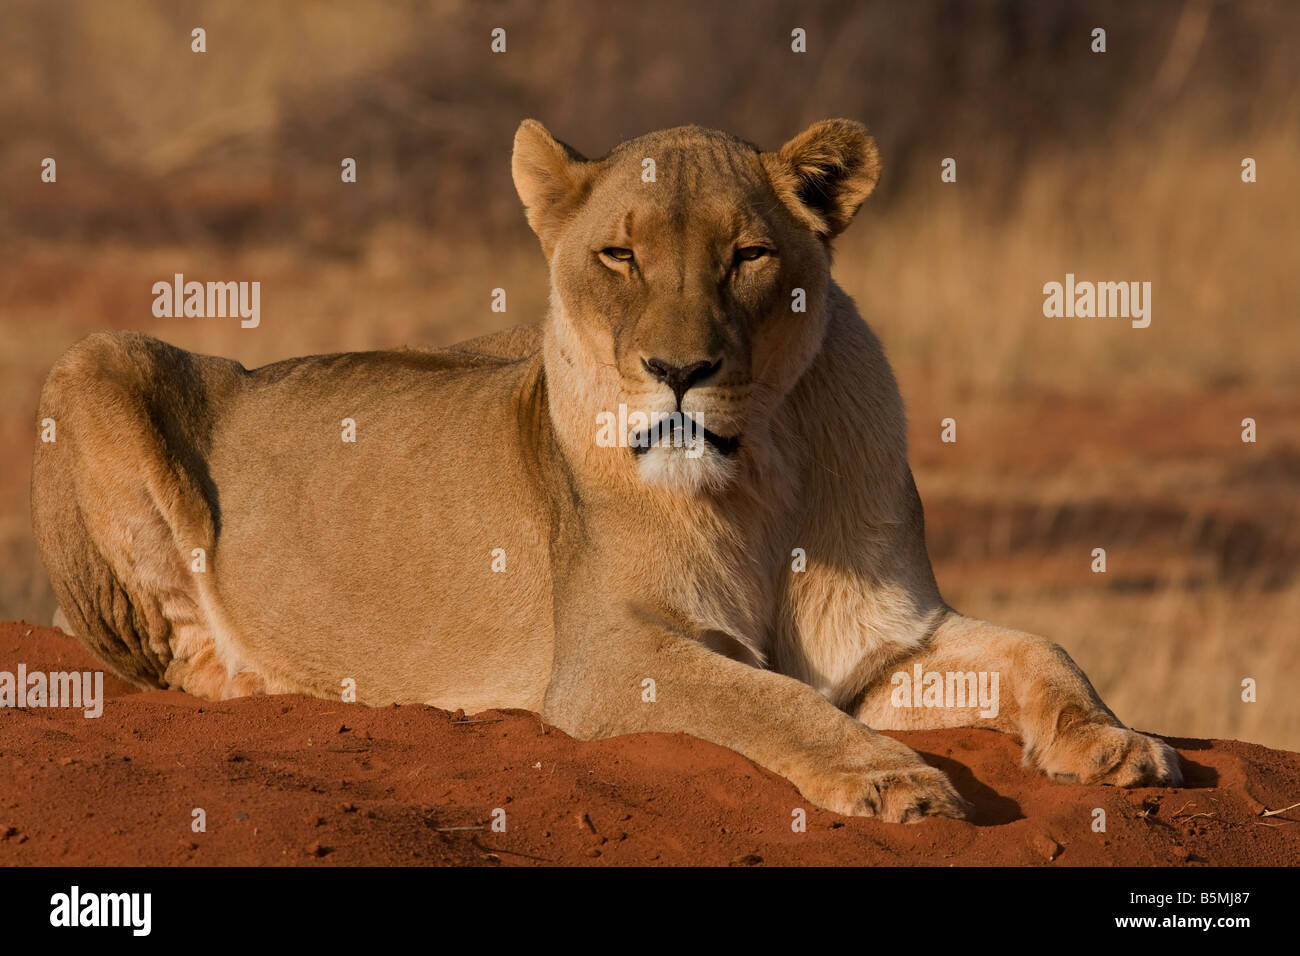 Lioness resting,Etosha National Park,Namibia Stock Photo